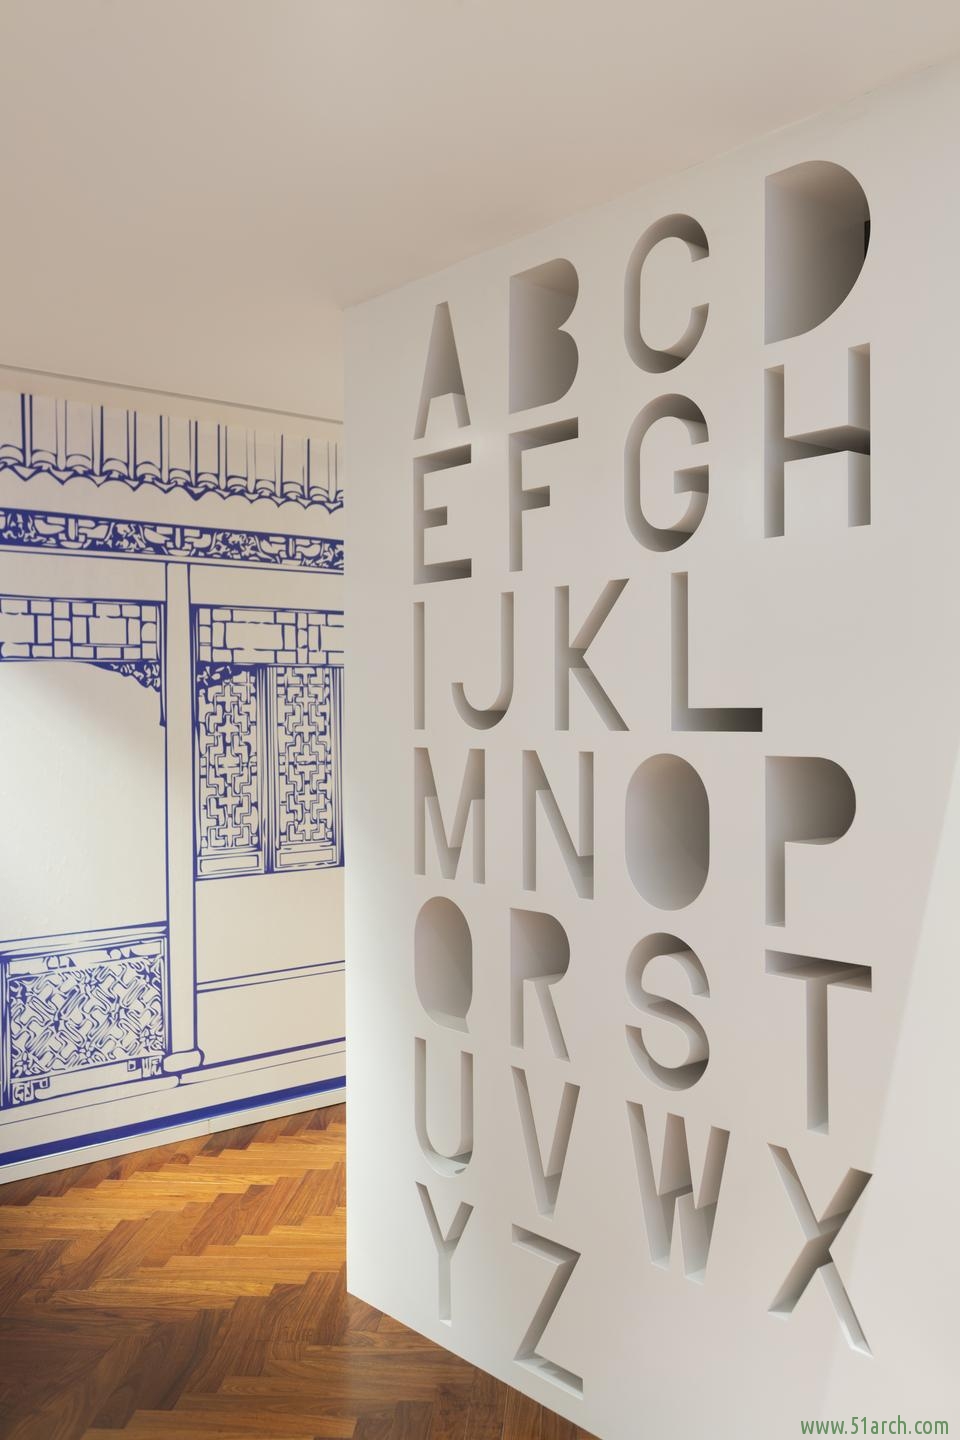 客厅镂空隔断设计，避免实体整块墙体，会给人压抑的感觉。采取镂空、字母造型组合，使墙体更有层次感与立体感。